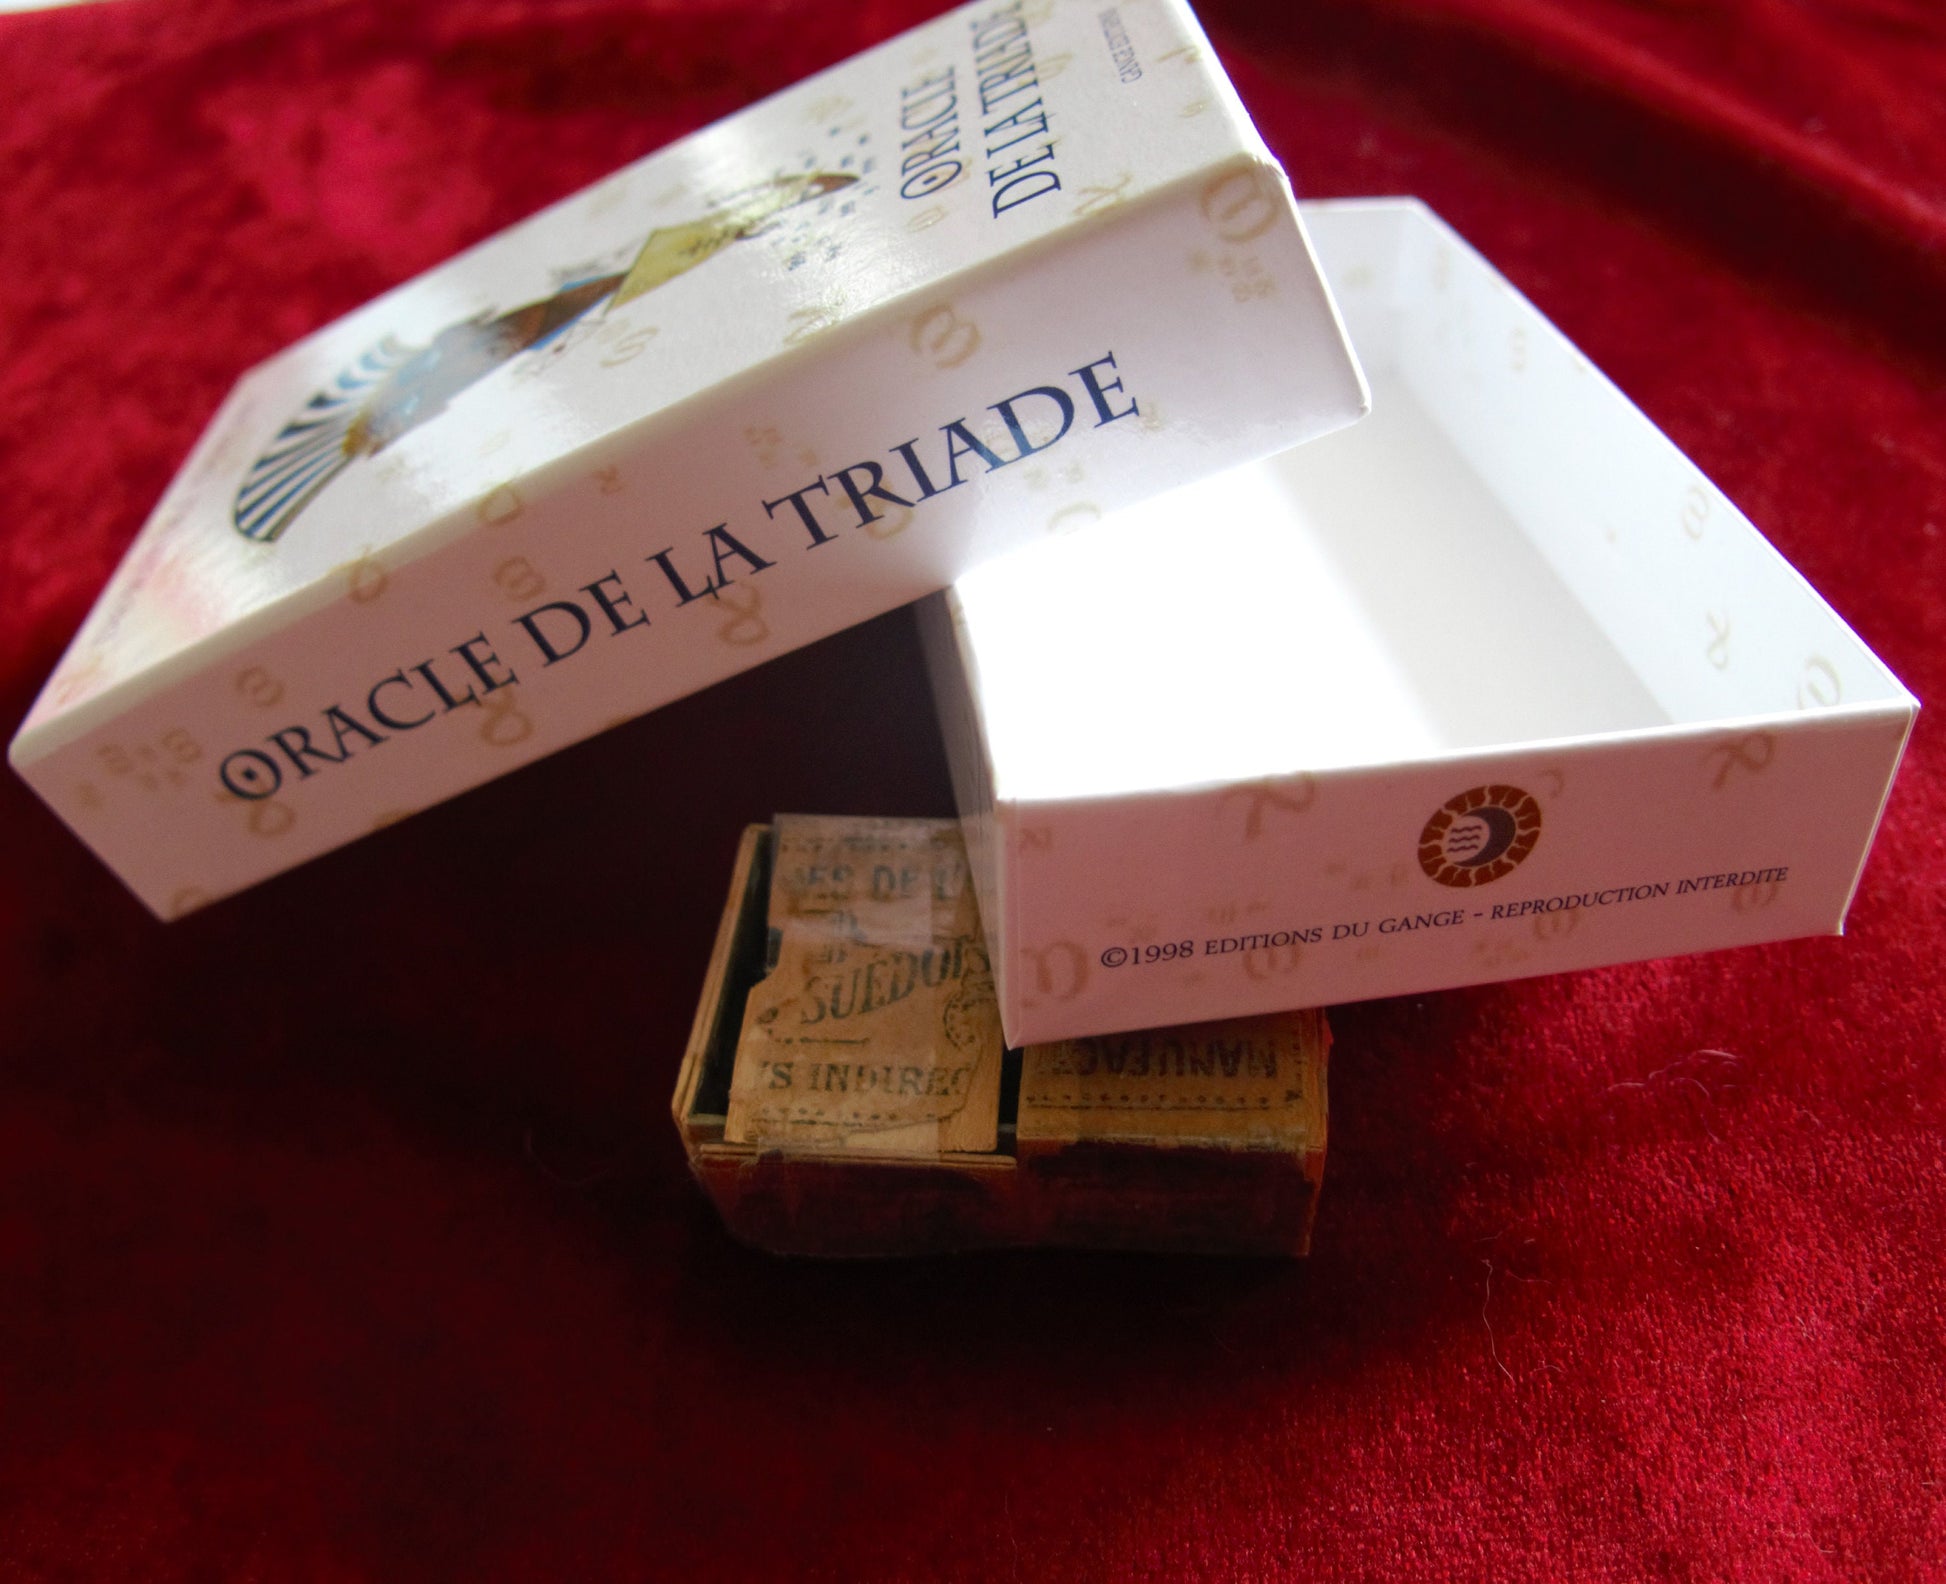 Acheter Oracle de la Triade - Boutique de tarots Variantes.